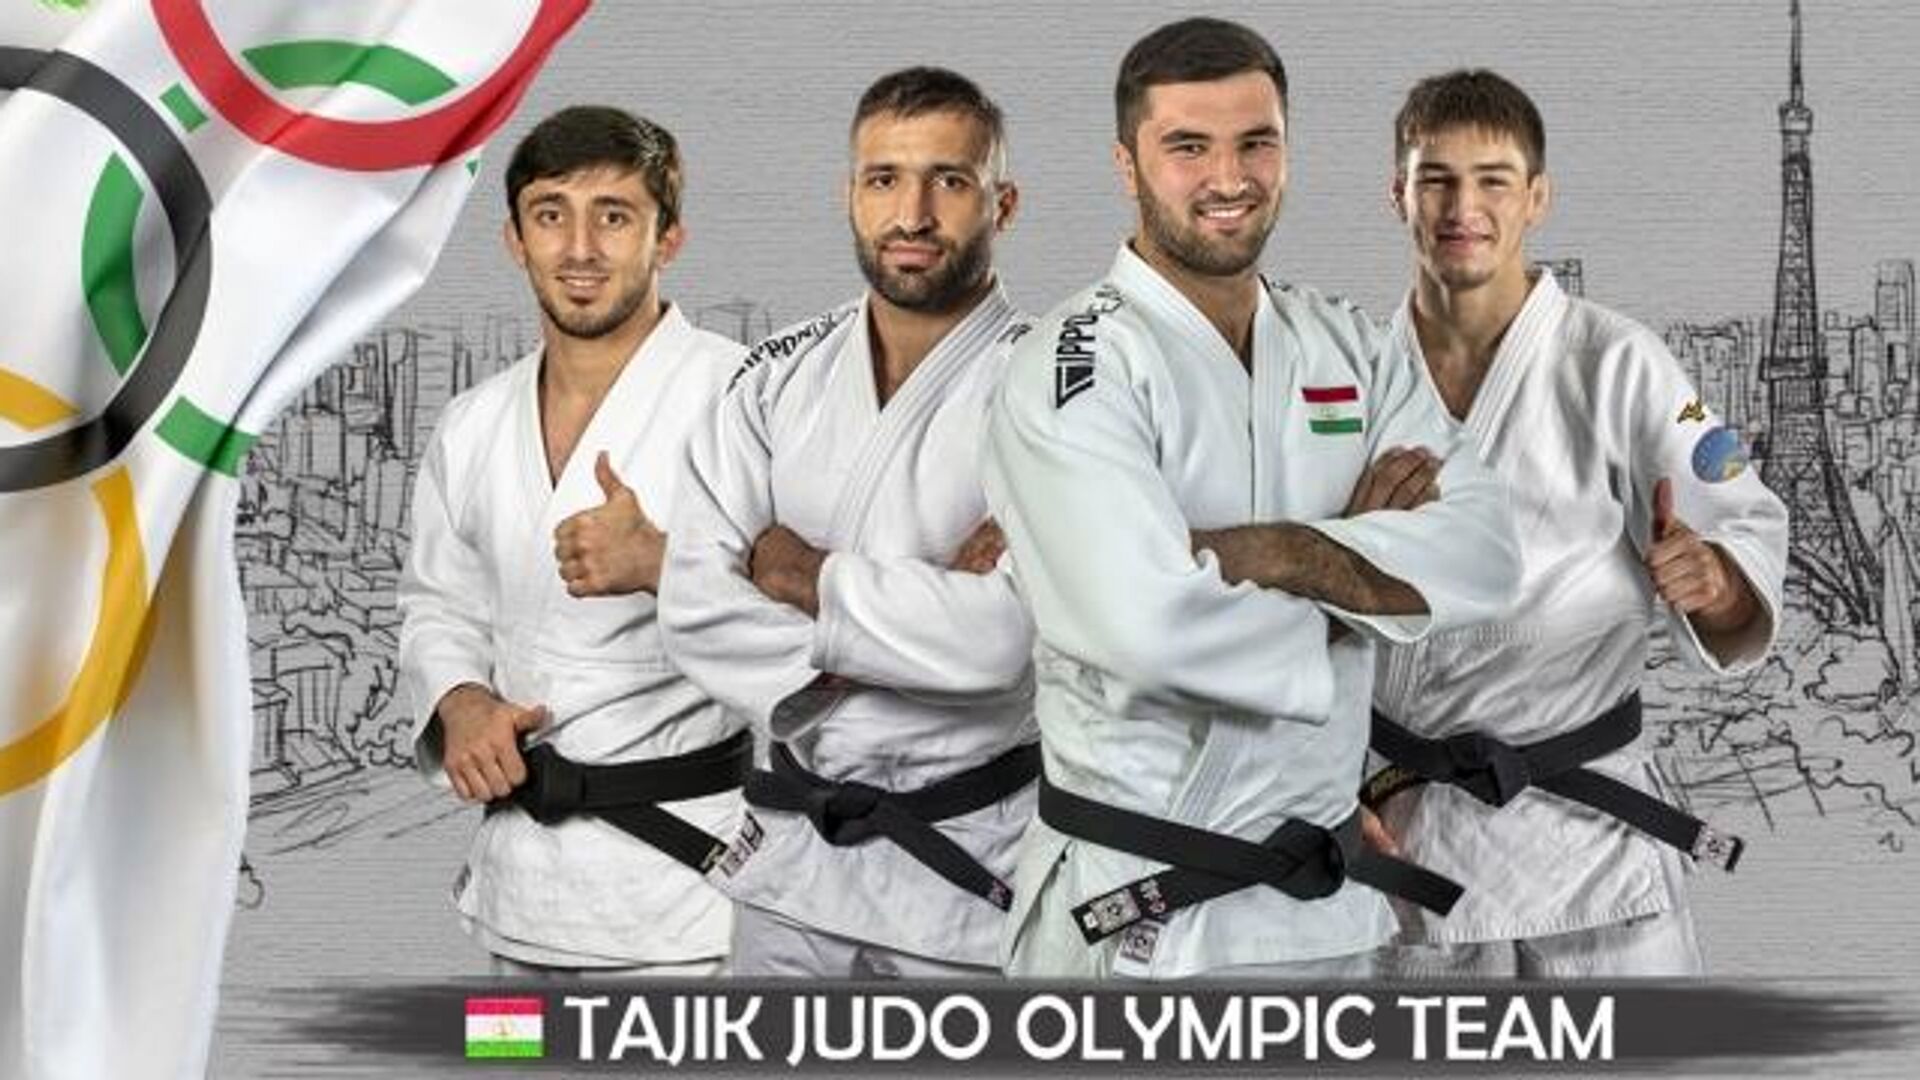 Таджикские дзюдоисты поднялись в олимпийском рейтинге после Большого шлема